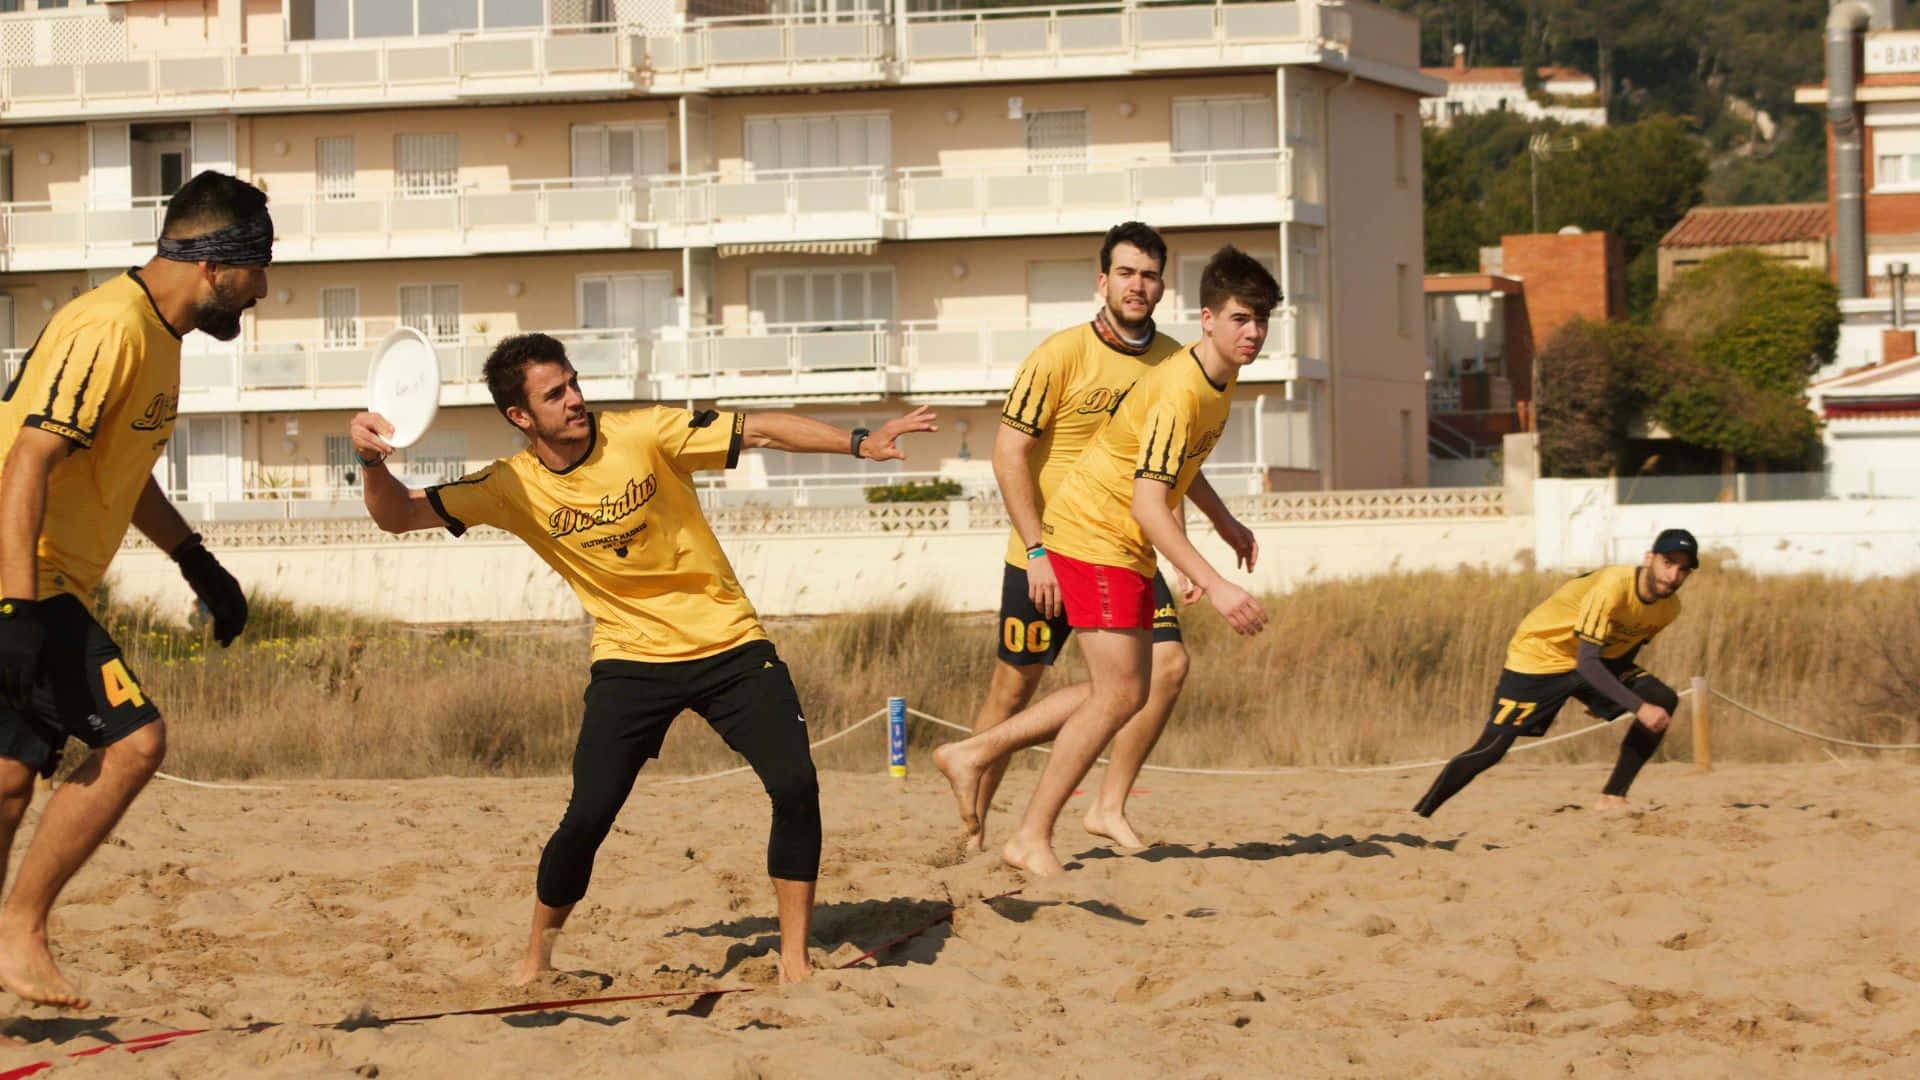 Ungrupo De Hombres Jugando Al Frisbee En La Playa